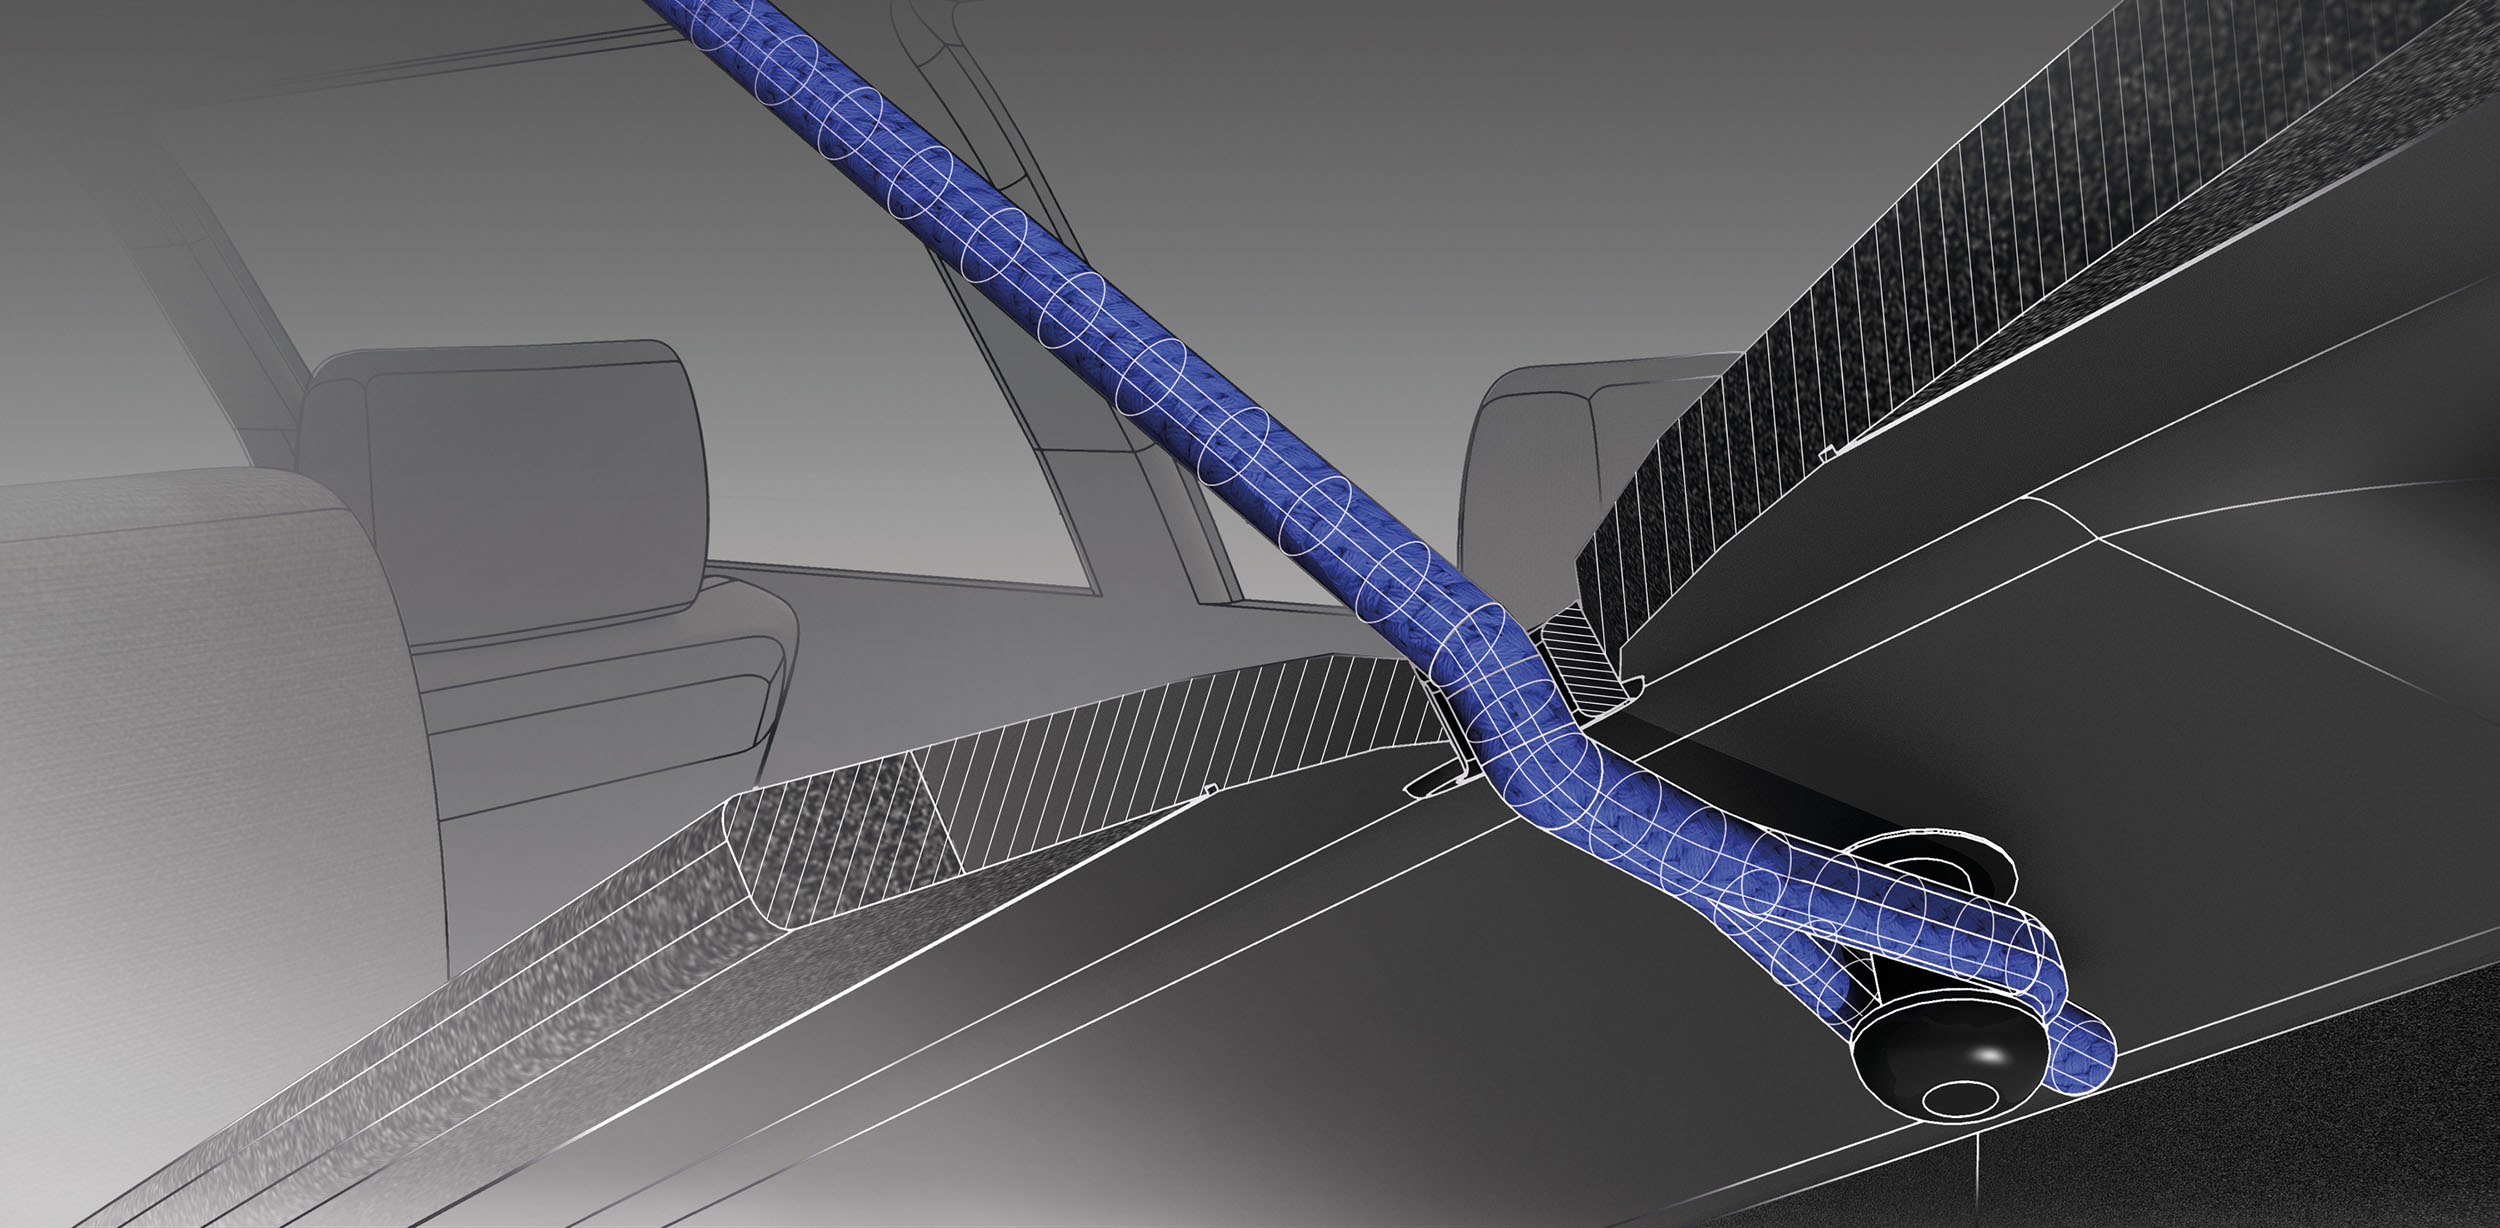 Technische Illustration einer Lochkordel zur Illustration von Aufbau und Funktionsweise, verbaut in einer Hutablage eines Autos